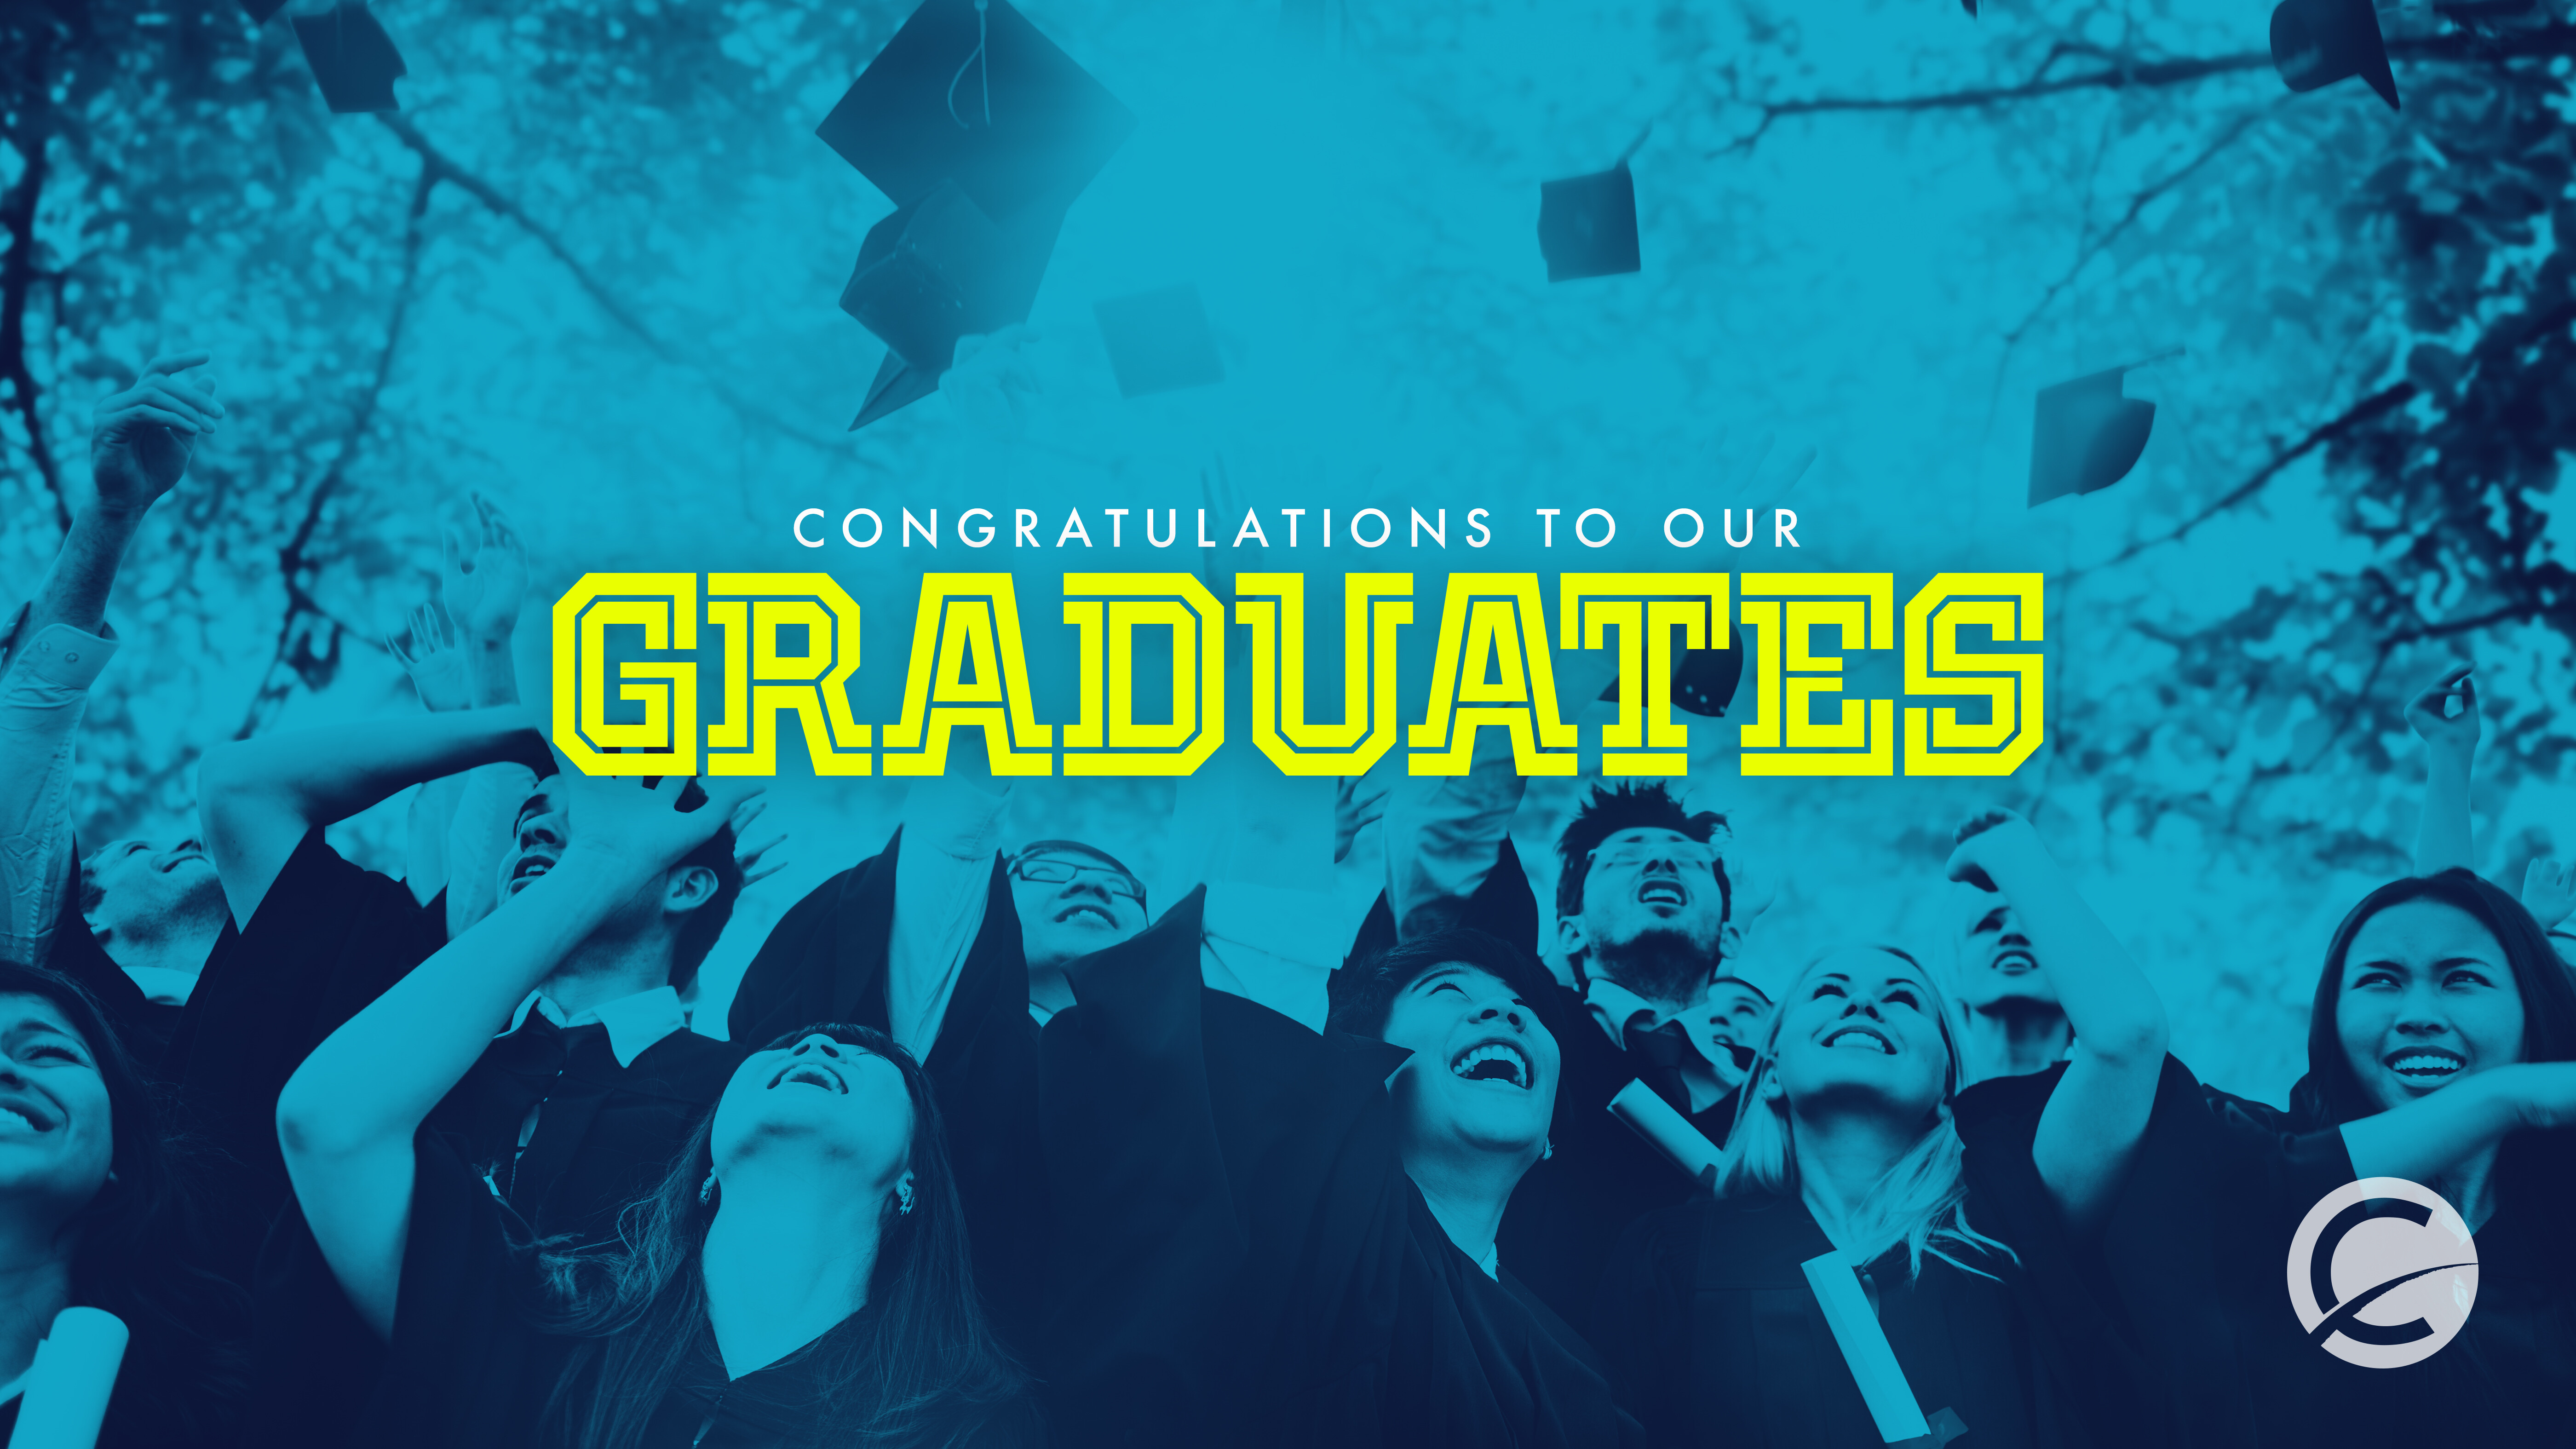 Congratulations Graduates!